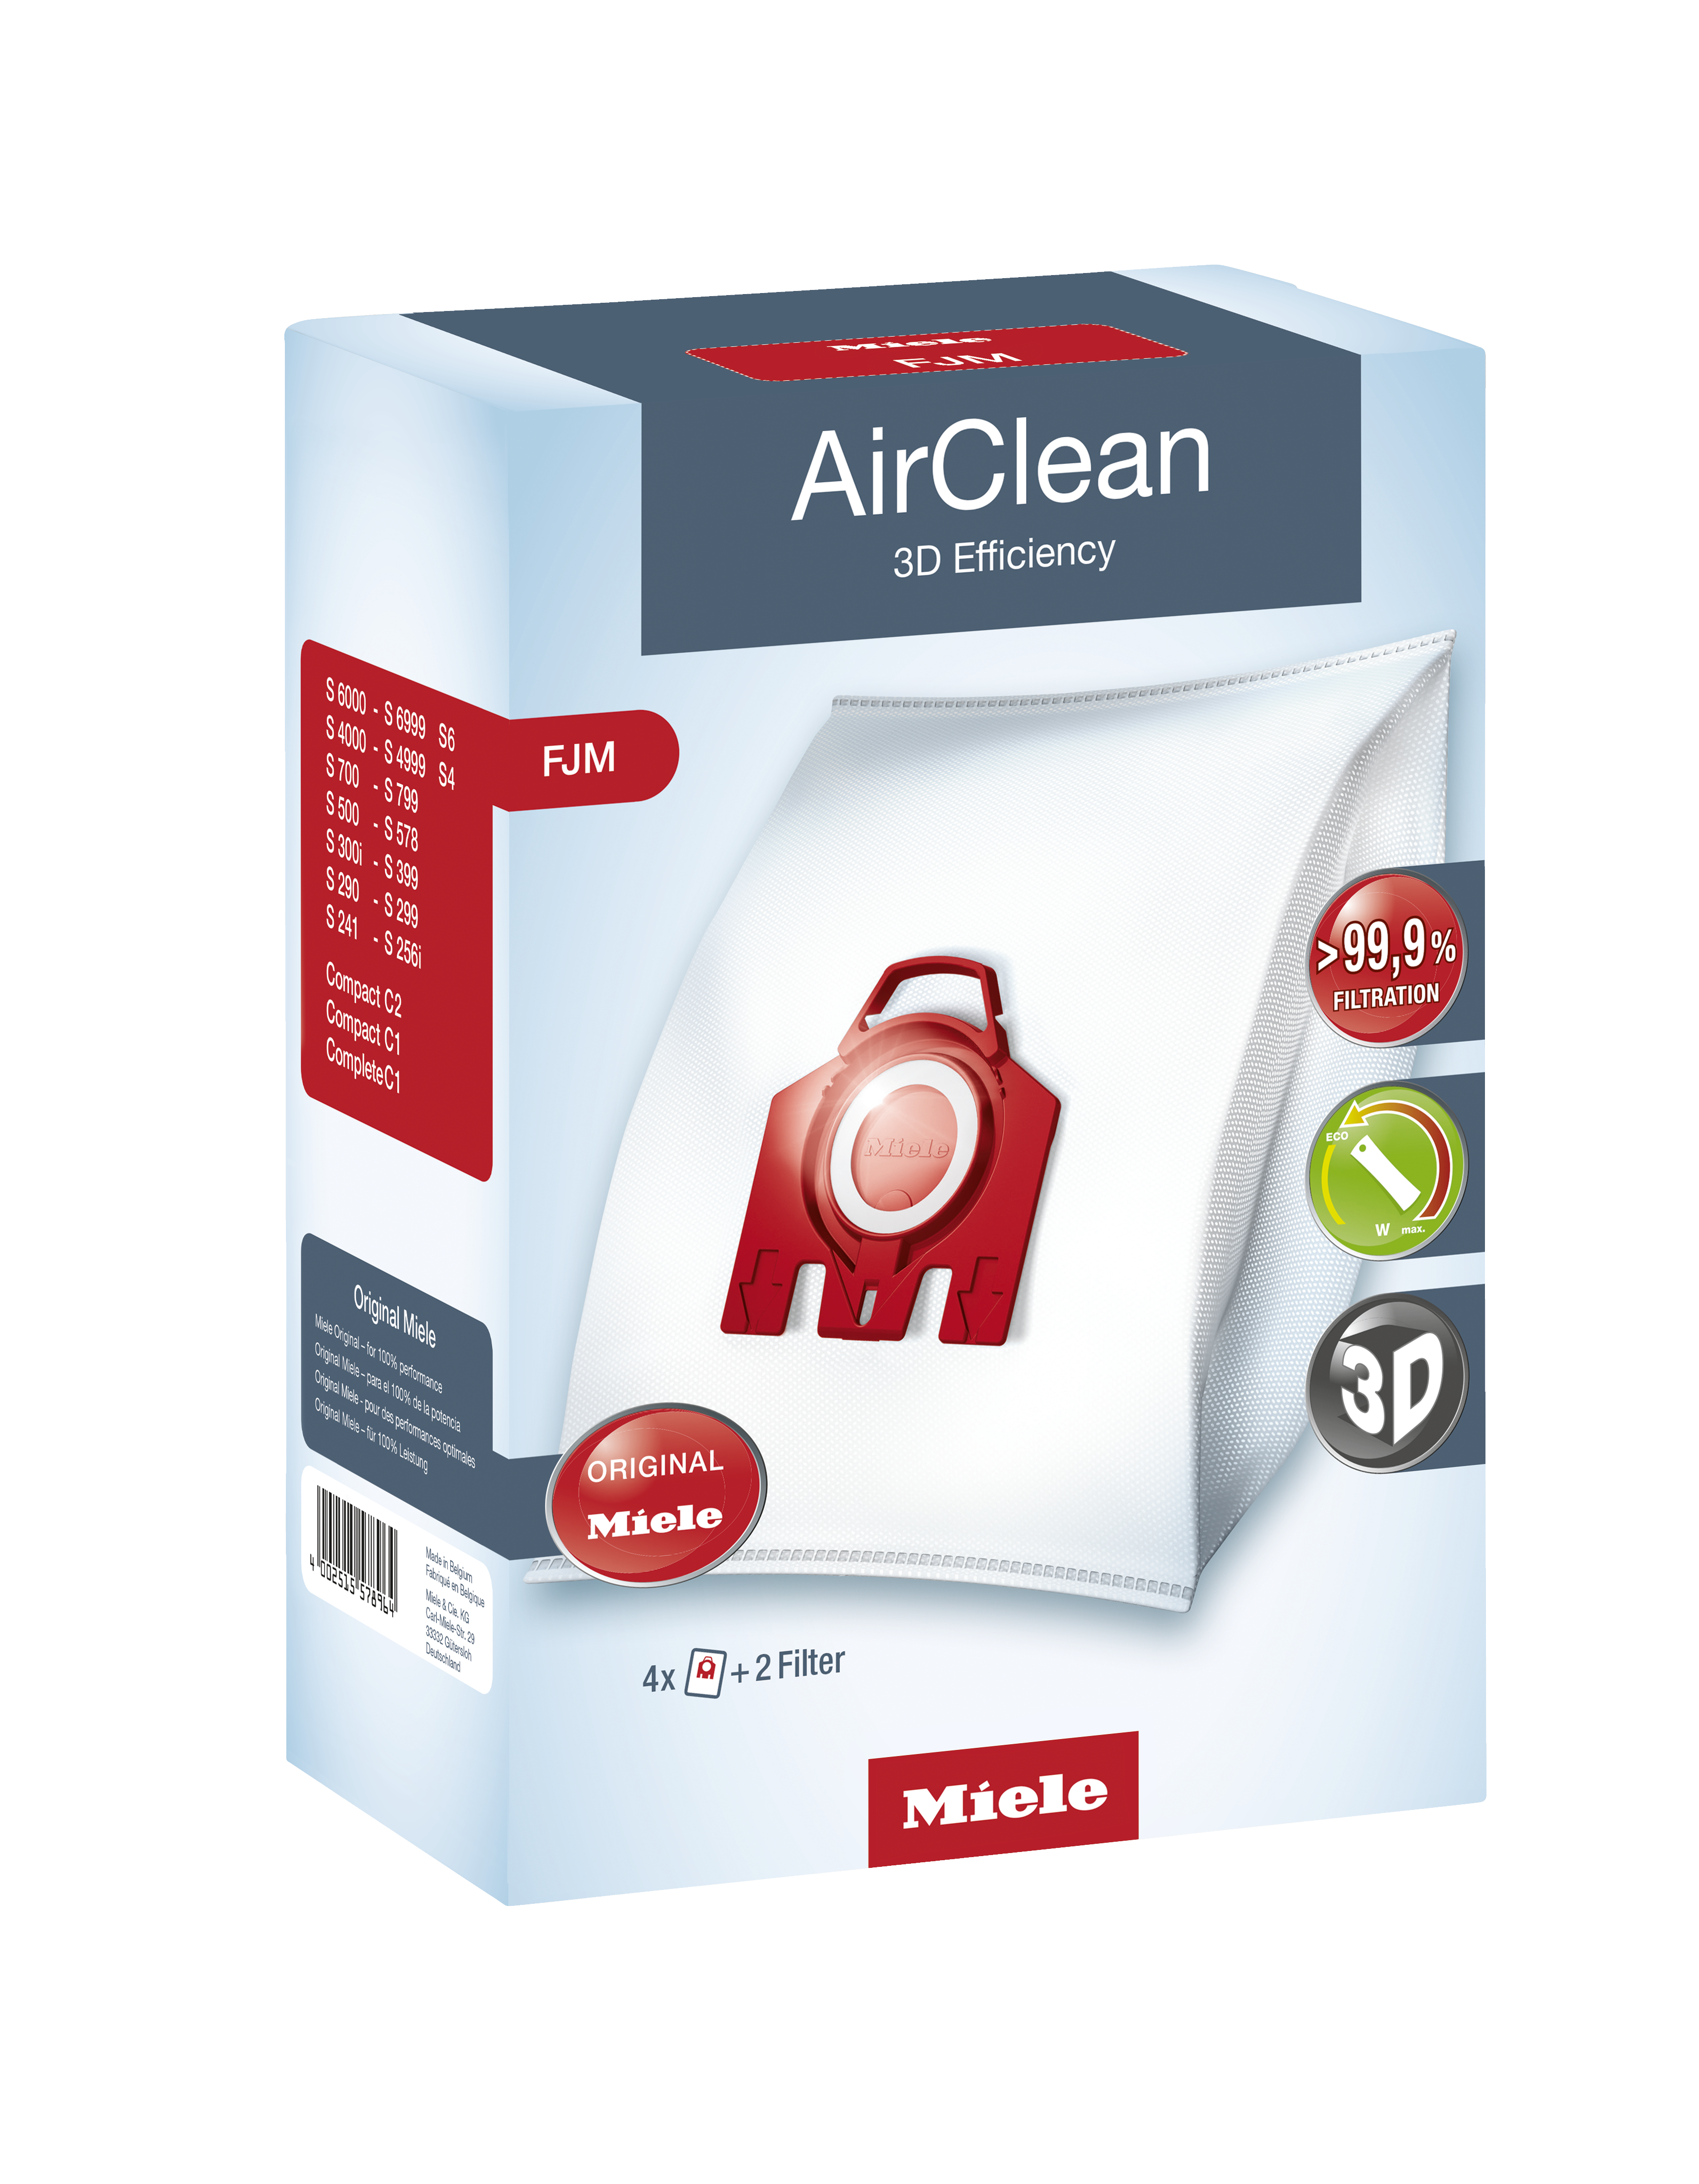 Miele AirClean 3D Efficiency Dust Bag Type FJM 4 Bags & 2 Filters FJM